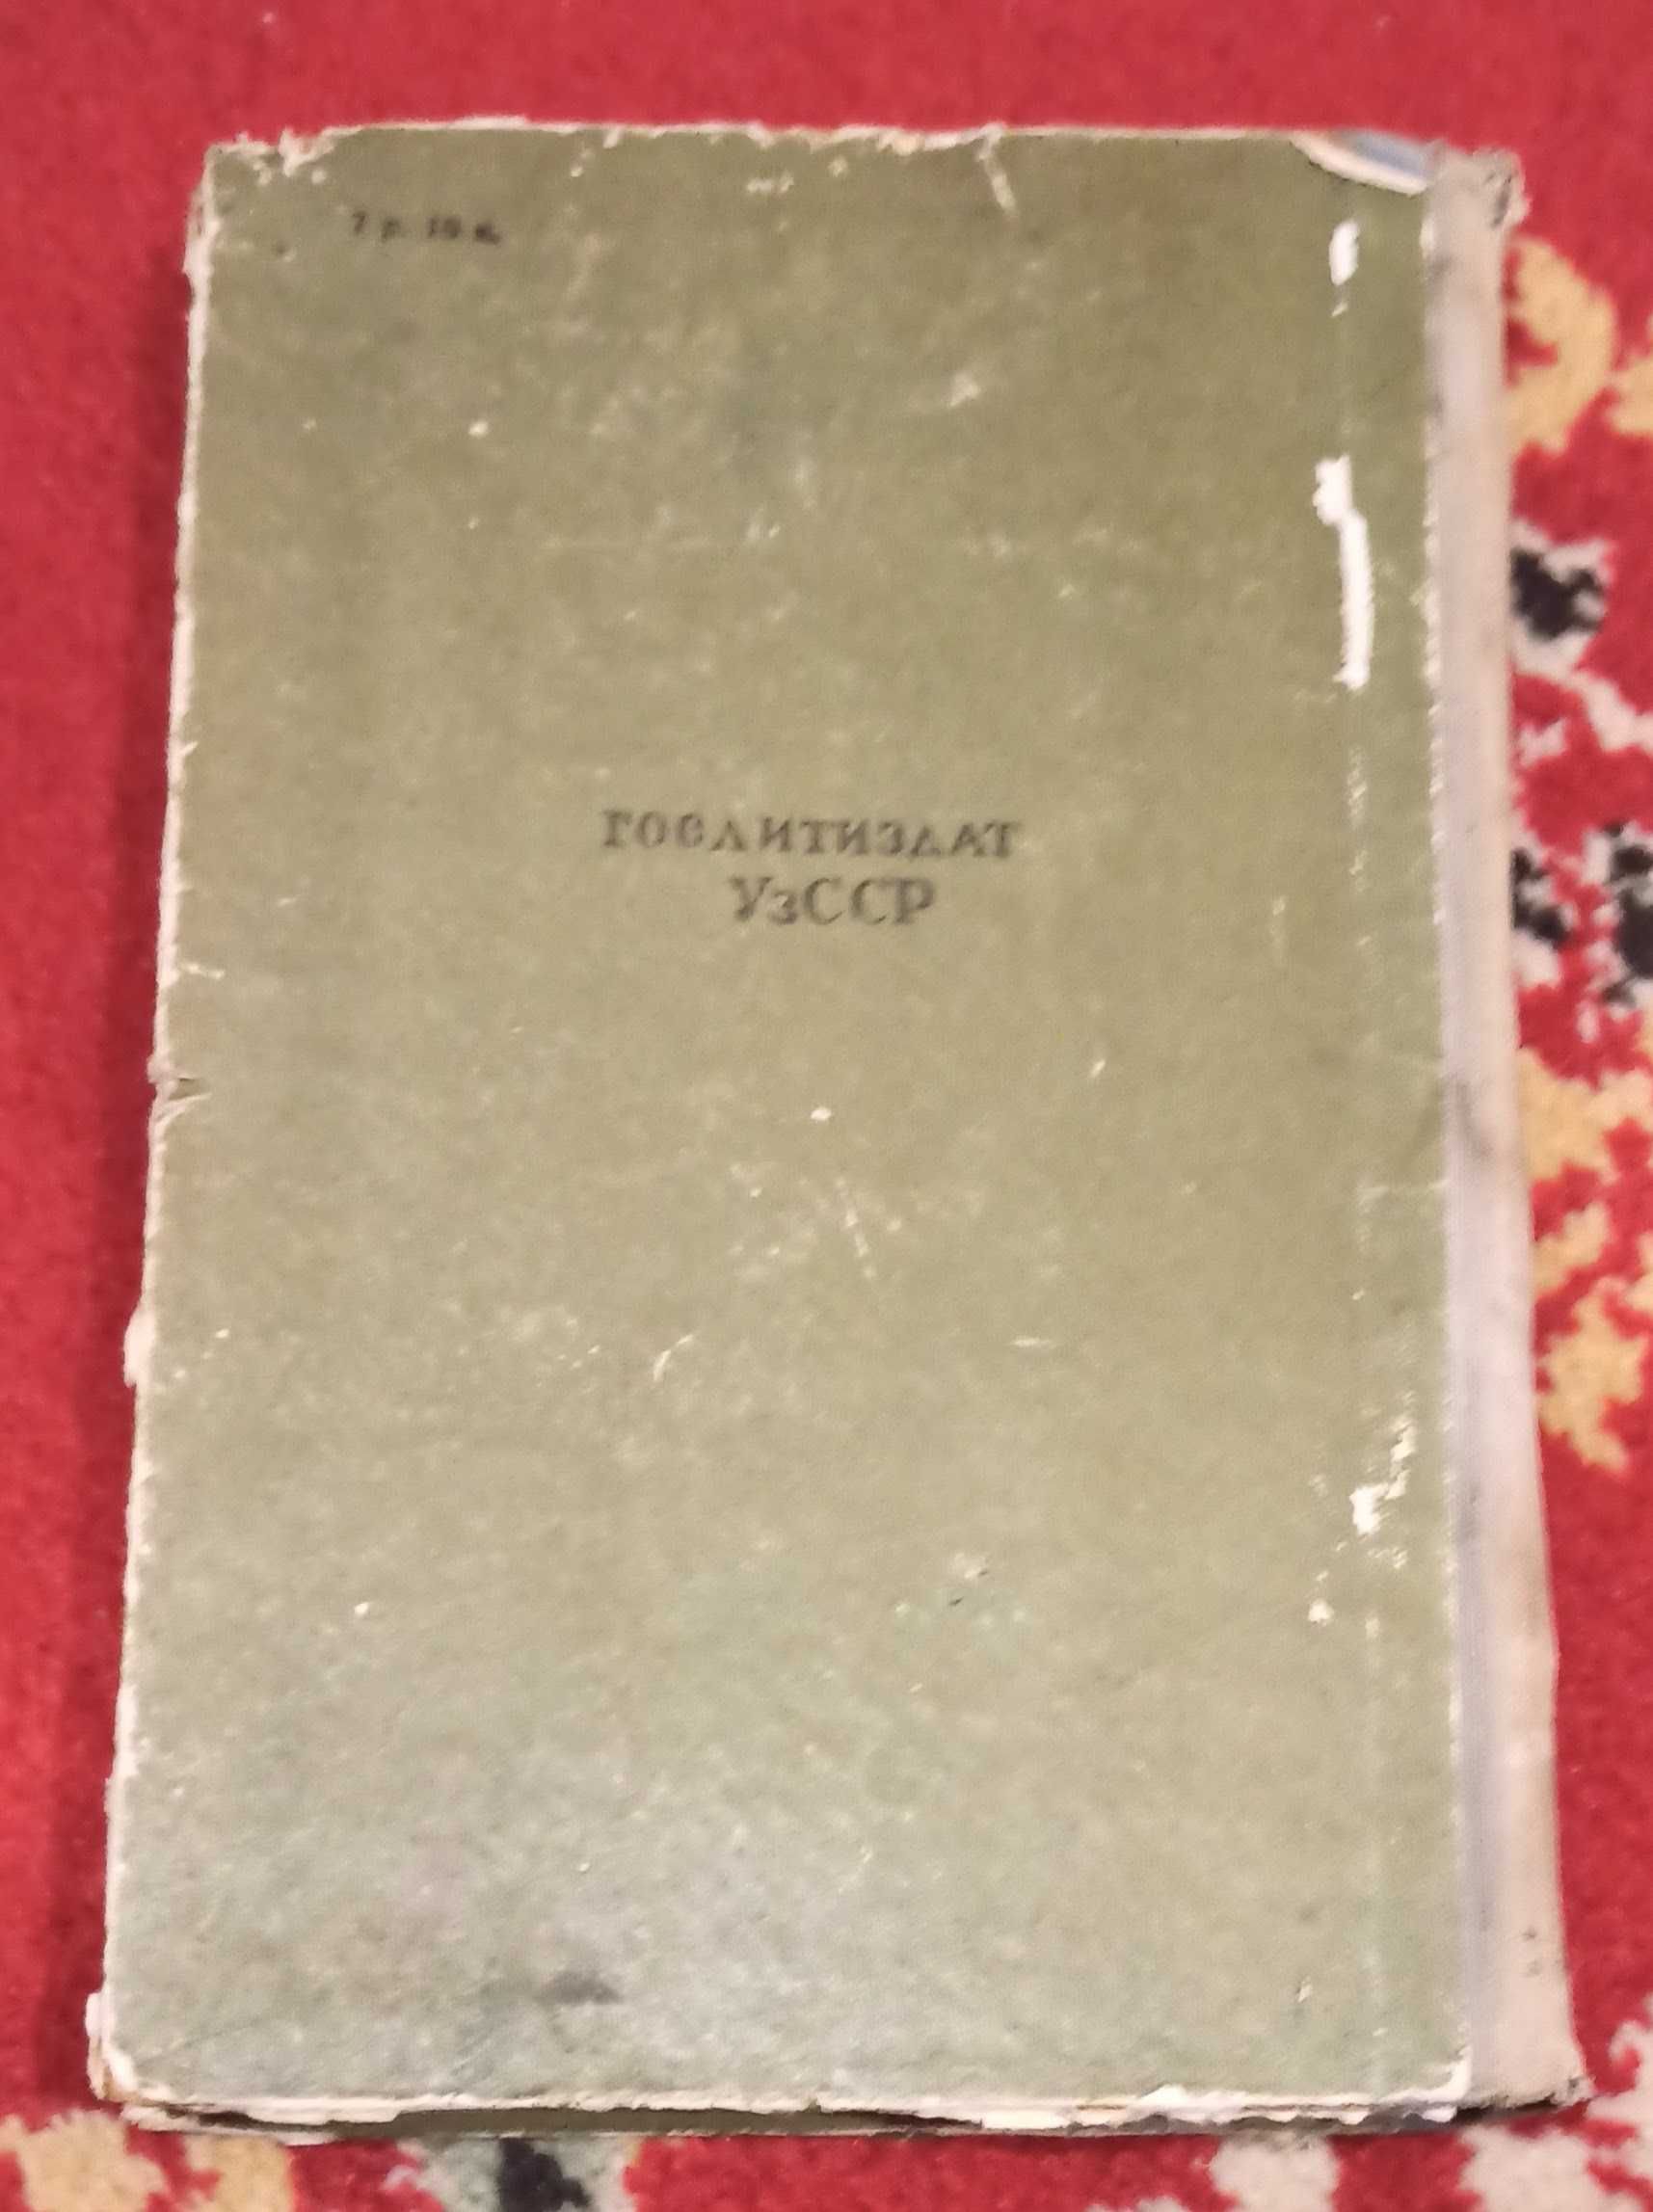 Книга Примкул Кадыров "Три корня" 1960 рік видання